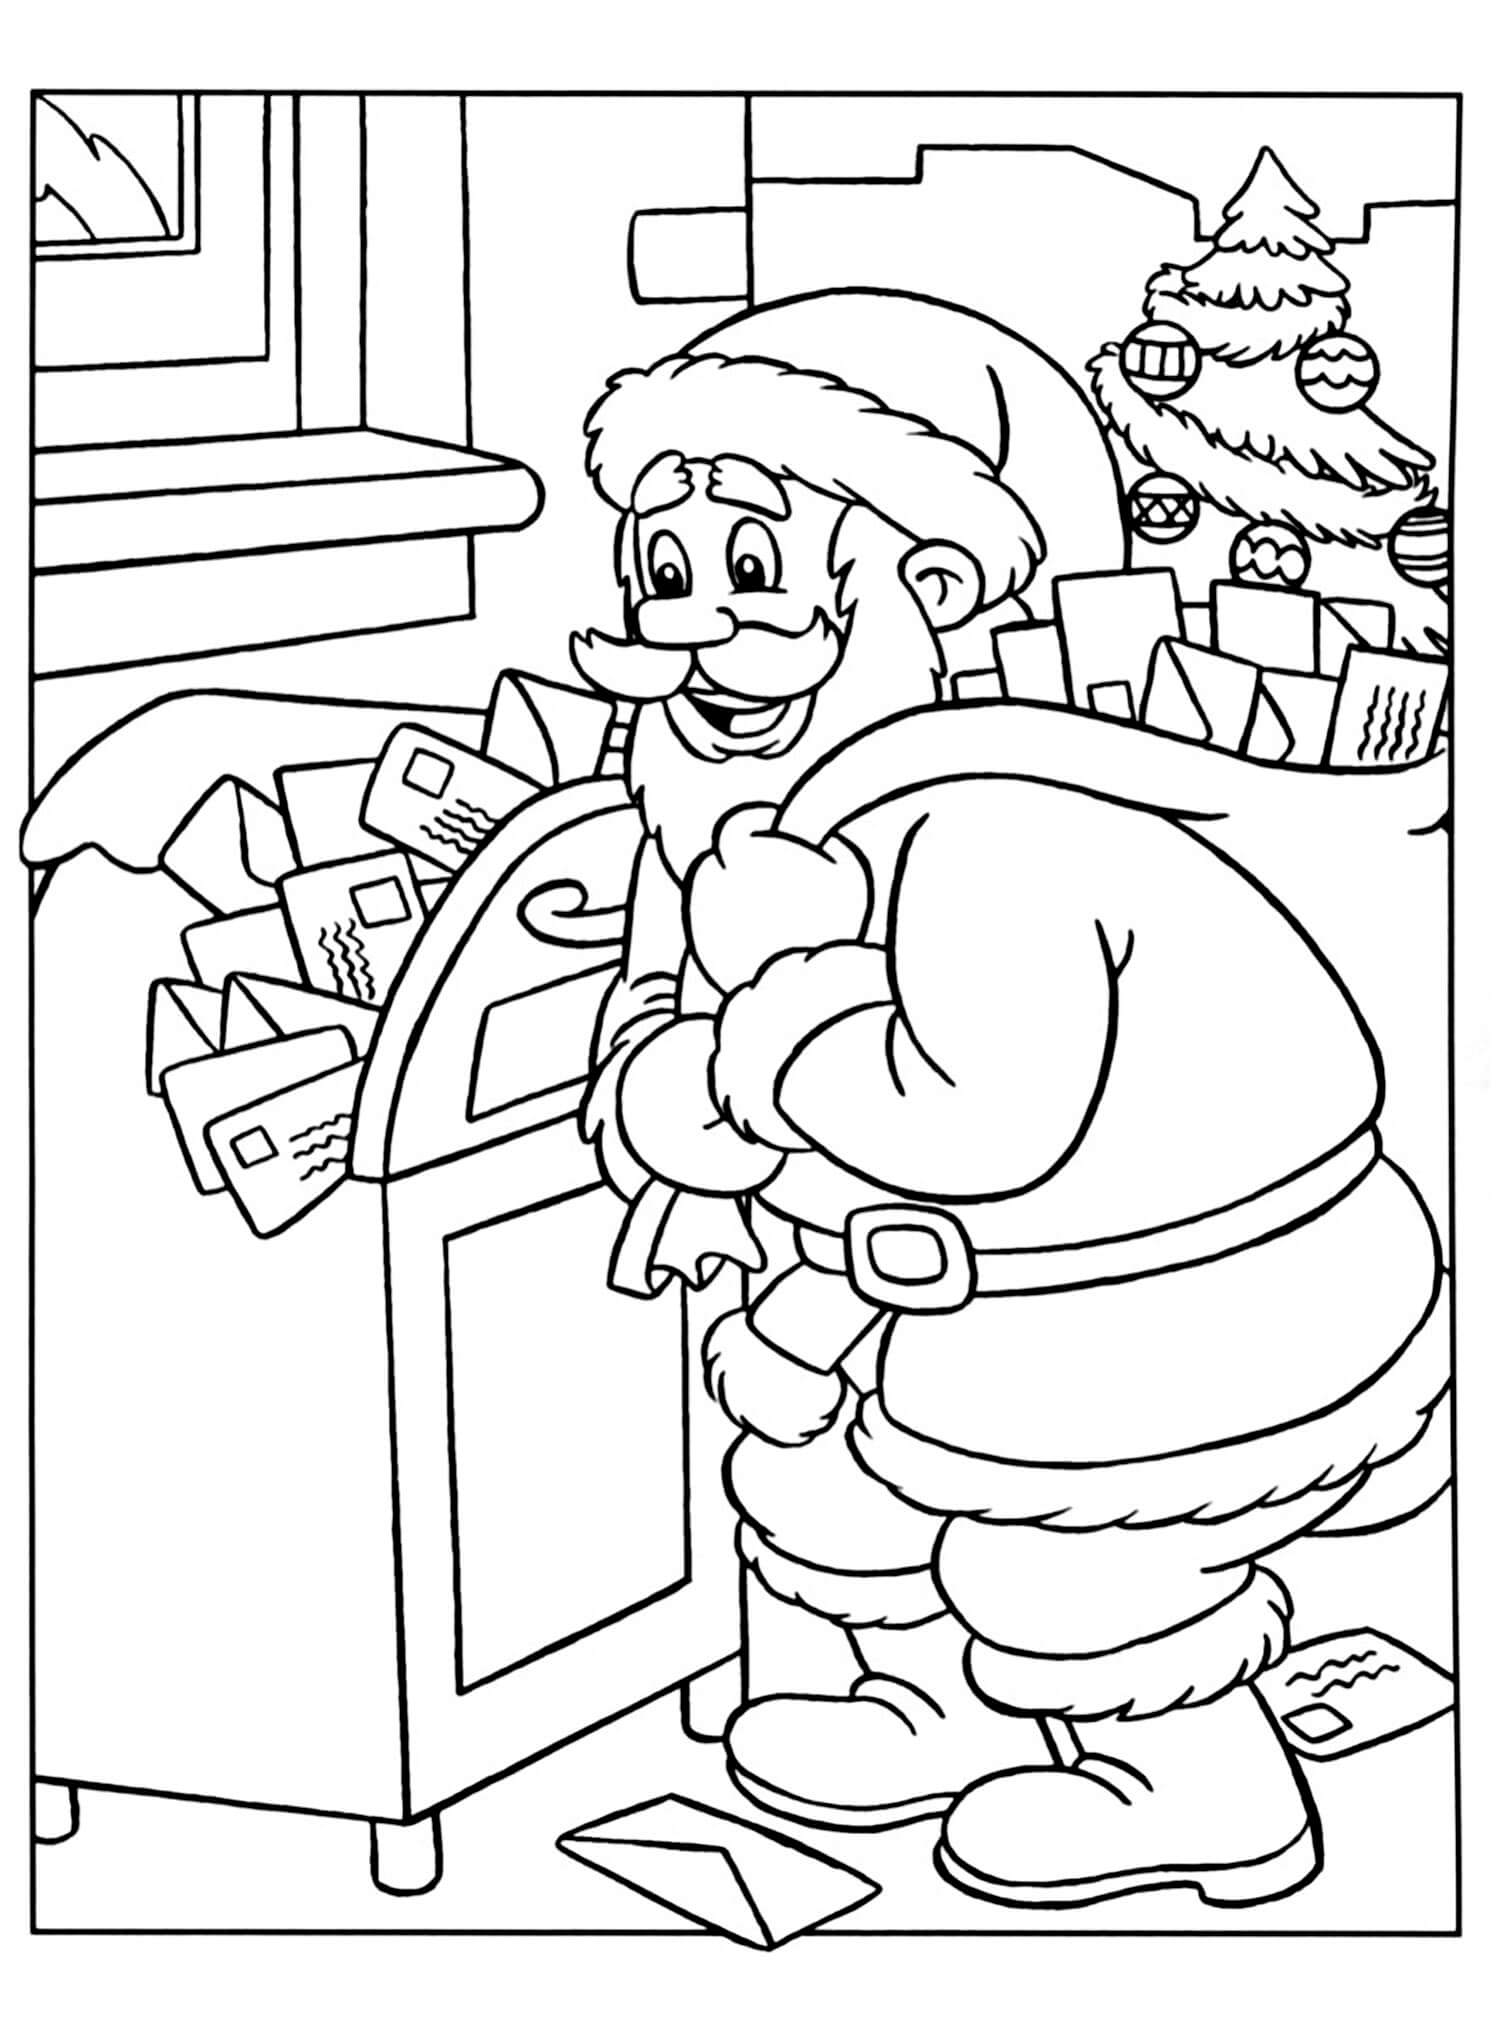 Раскраска Санта Клаус достаёт письма из почтового ящика